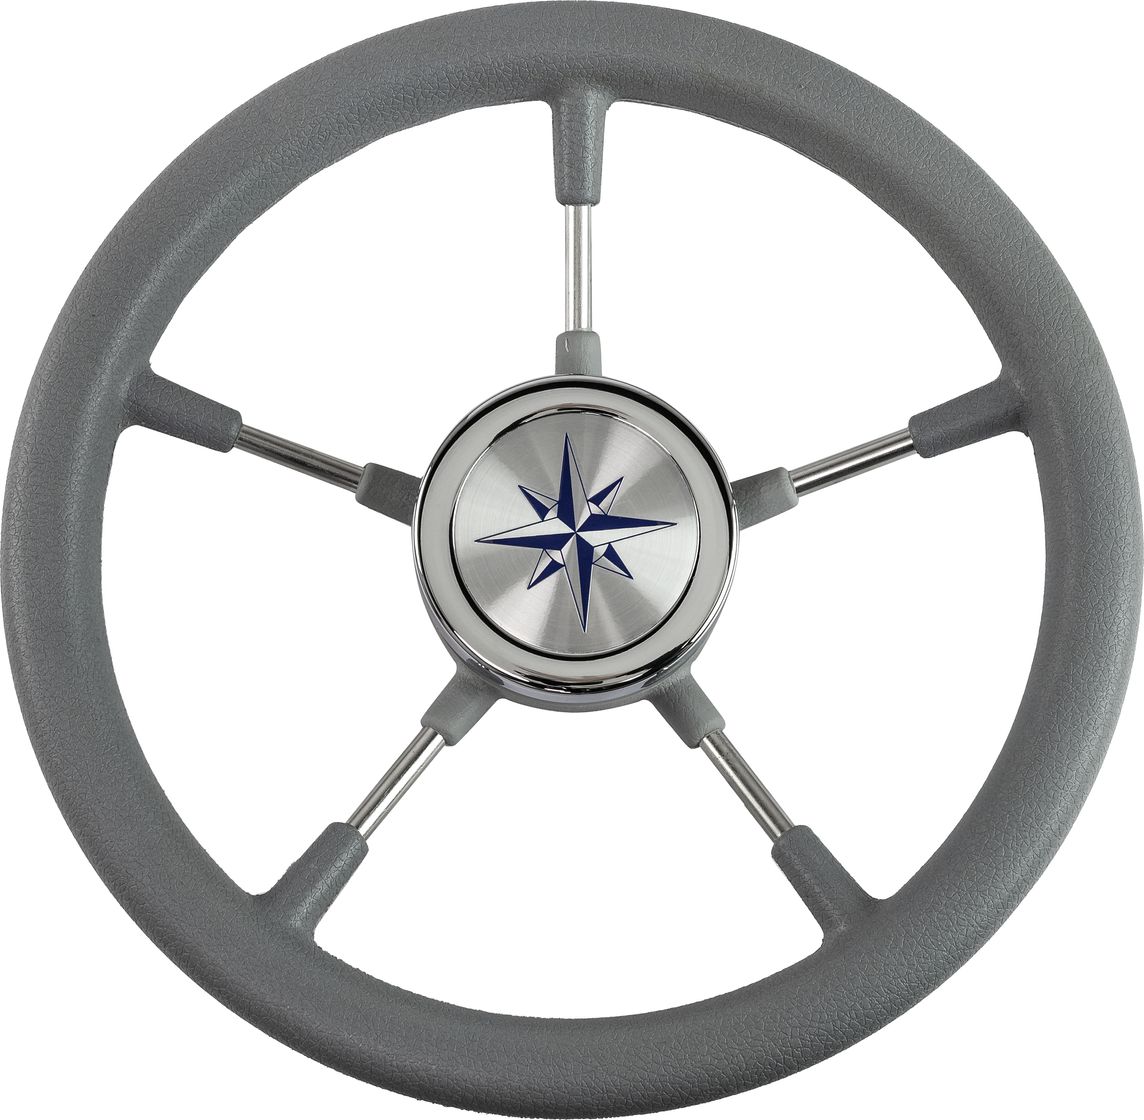 Рулевое колесо RIVA RSL обод серый, спицы серебряные д. 320 мм VN732022-03 рулевое колесо leader tanegum серый обод серебряные спицы д 360 мм vn7360 03